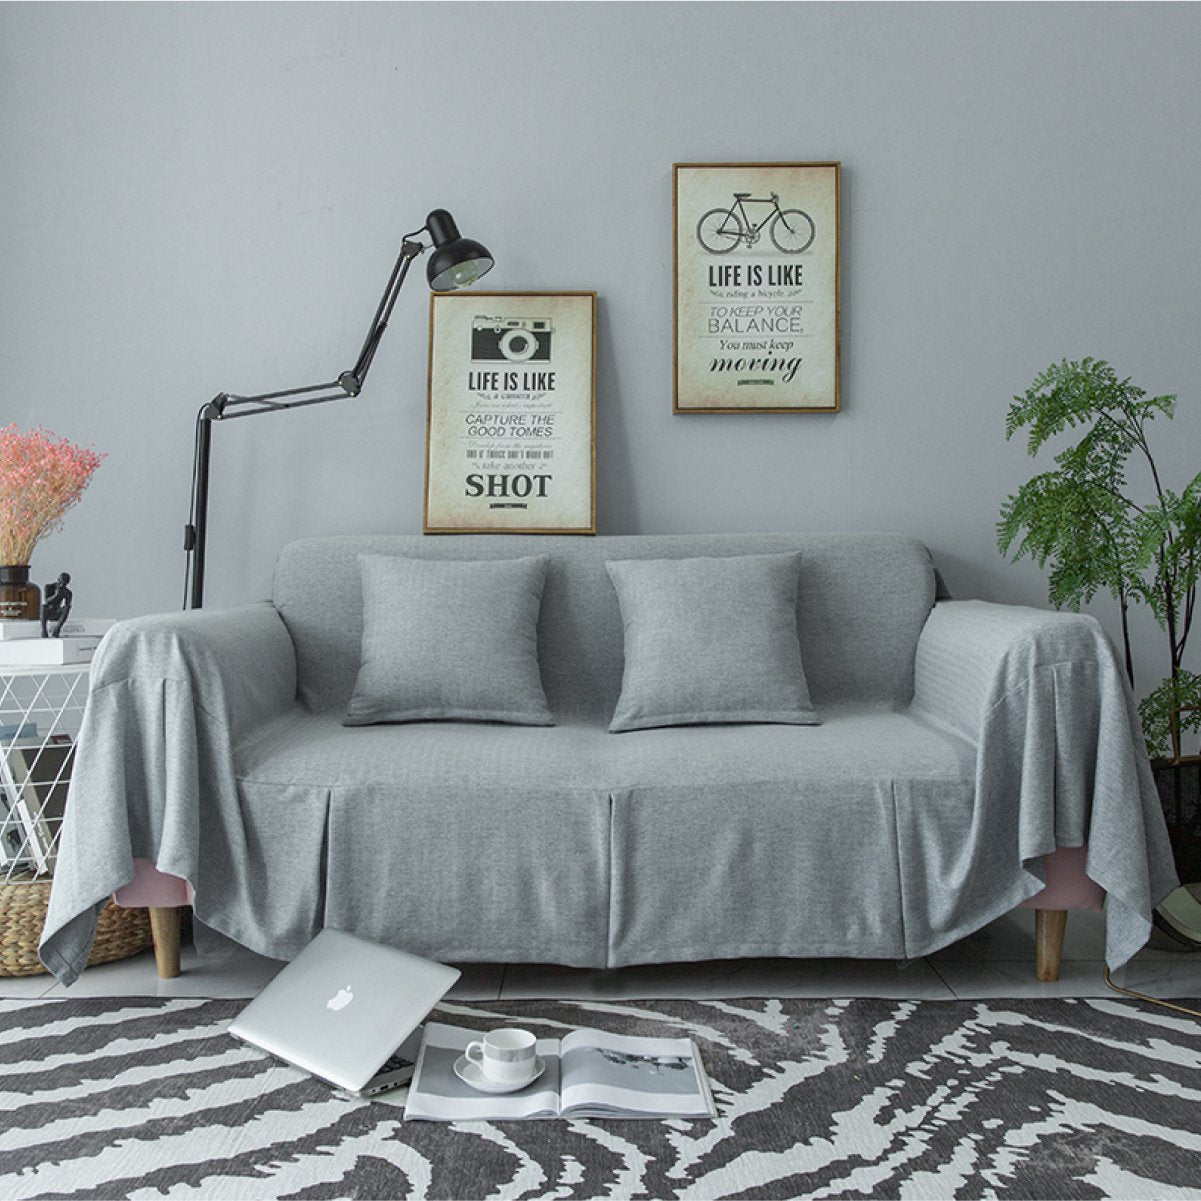 低調的灰色系沙發，居家生活色調